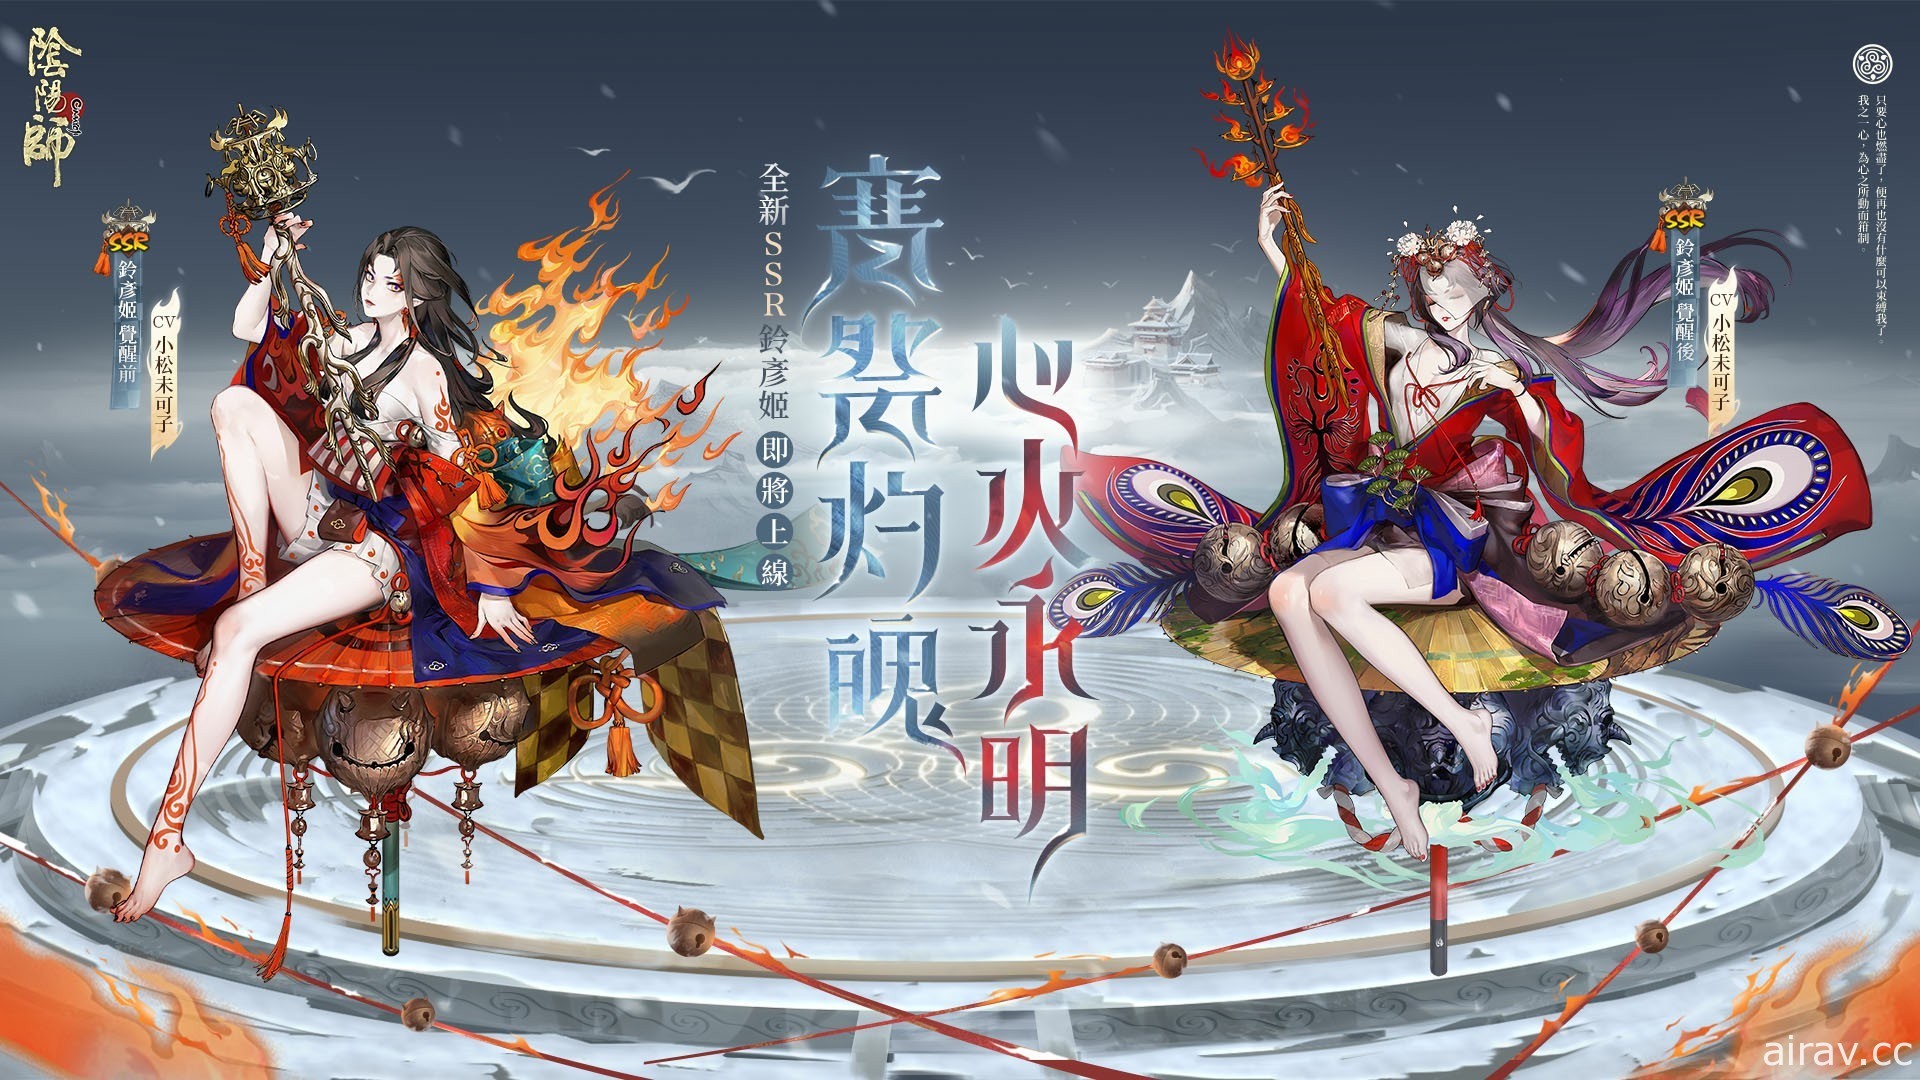 《陰陽師 Onmyoji》全新雙神版本上線 SSR 鈴彥姬、SP 夢尋山兔同時降臨平安京